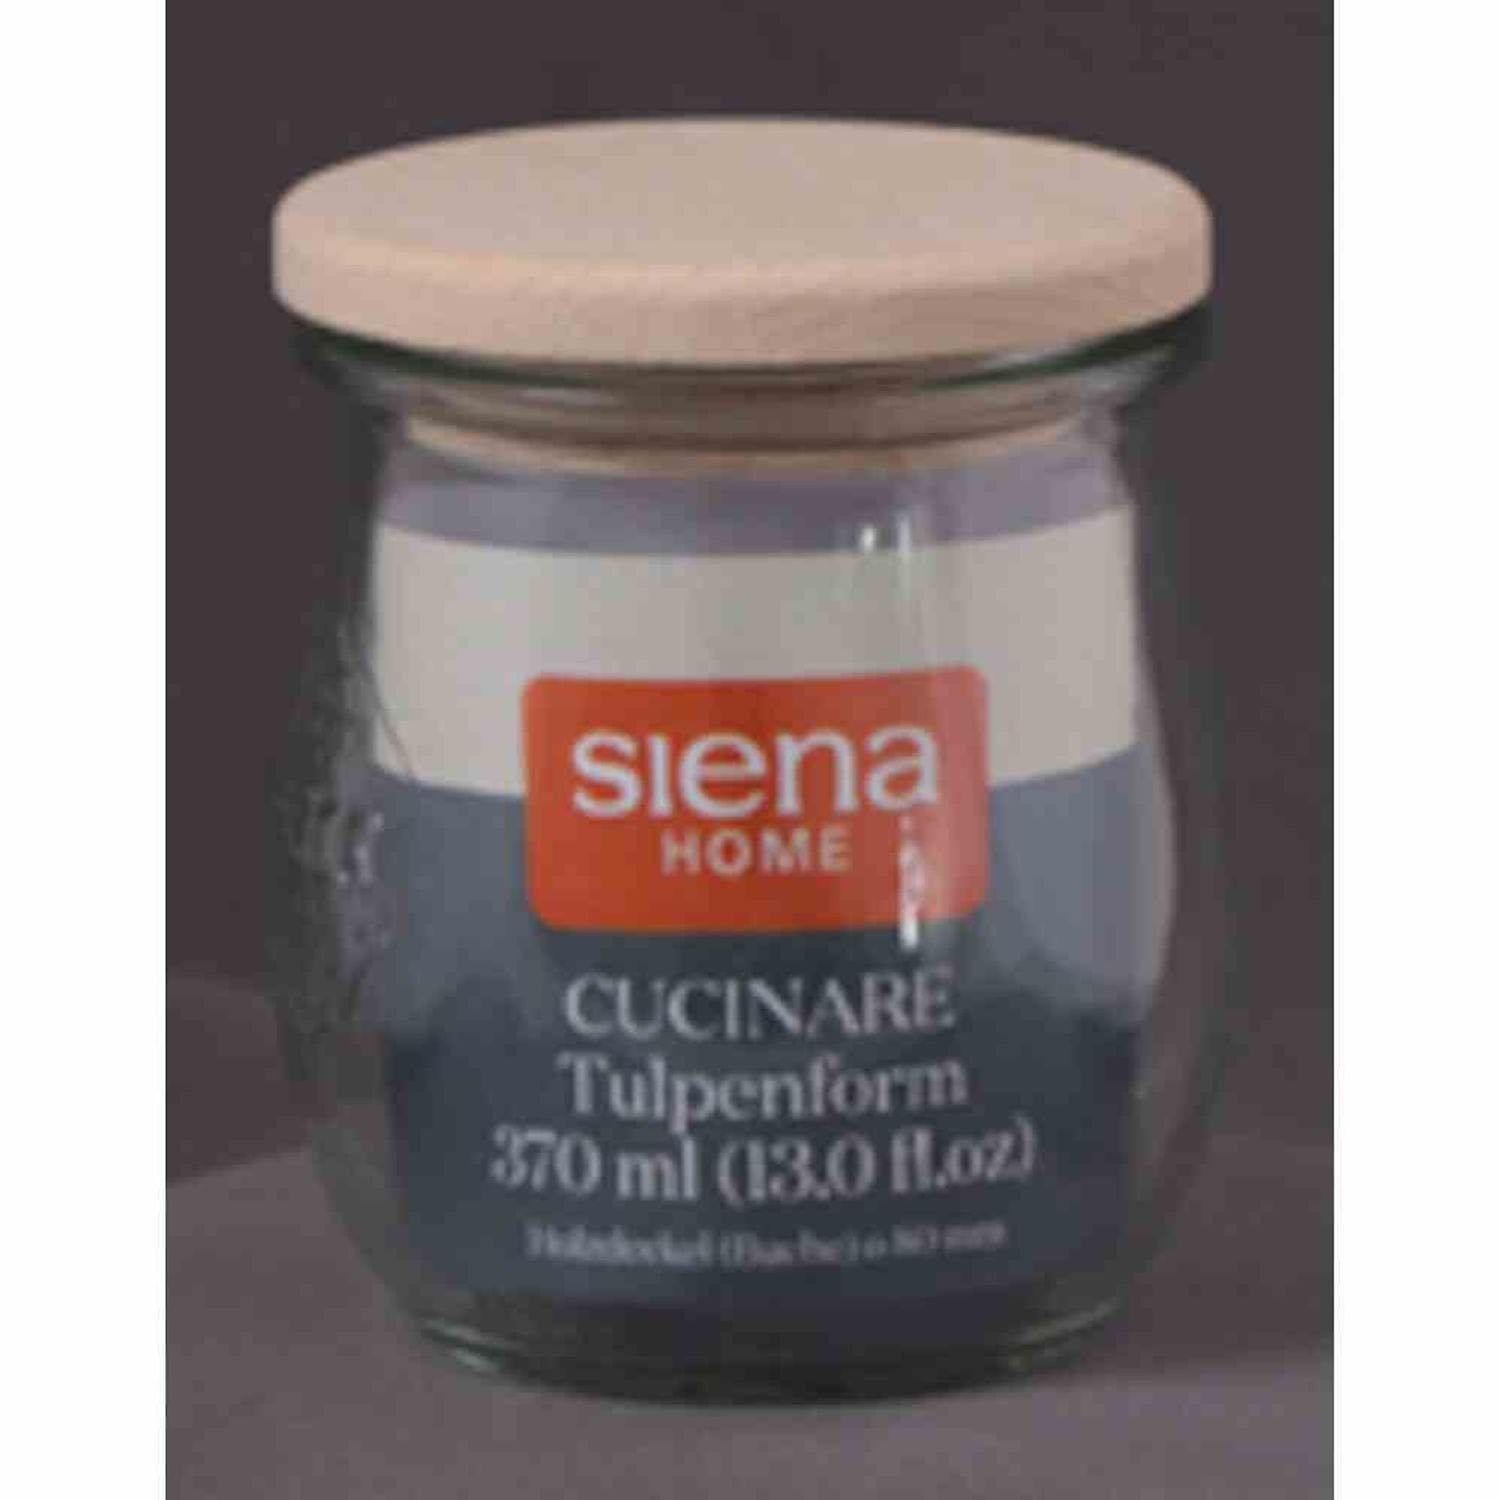 Glas Weck-Glas Home "Cucinare" RR370 ml, Vorratsdose 370 Siena Sturz-Glas Buchenholz-Deckel,